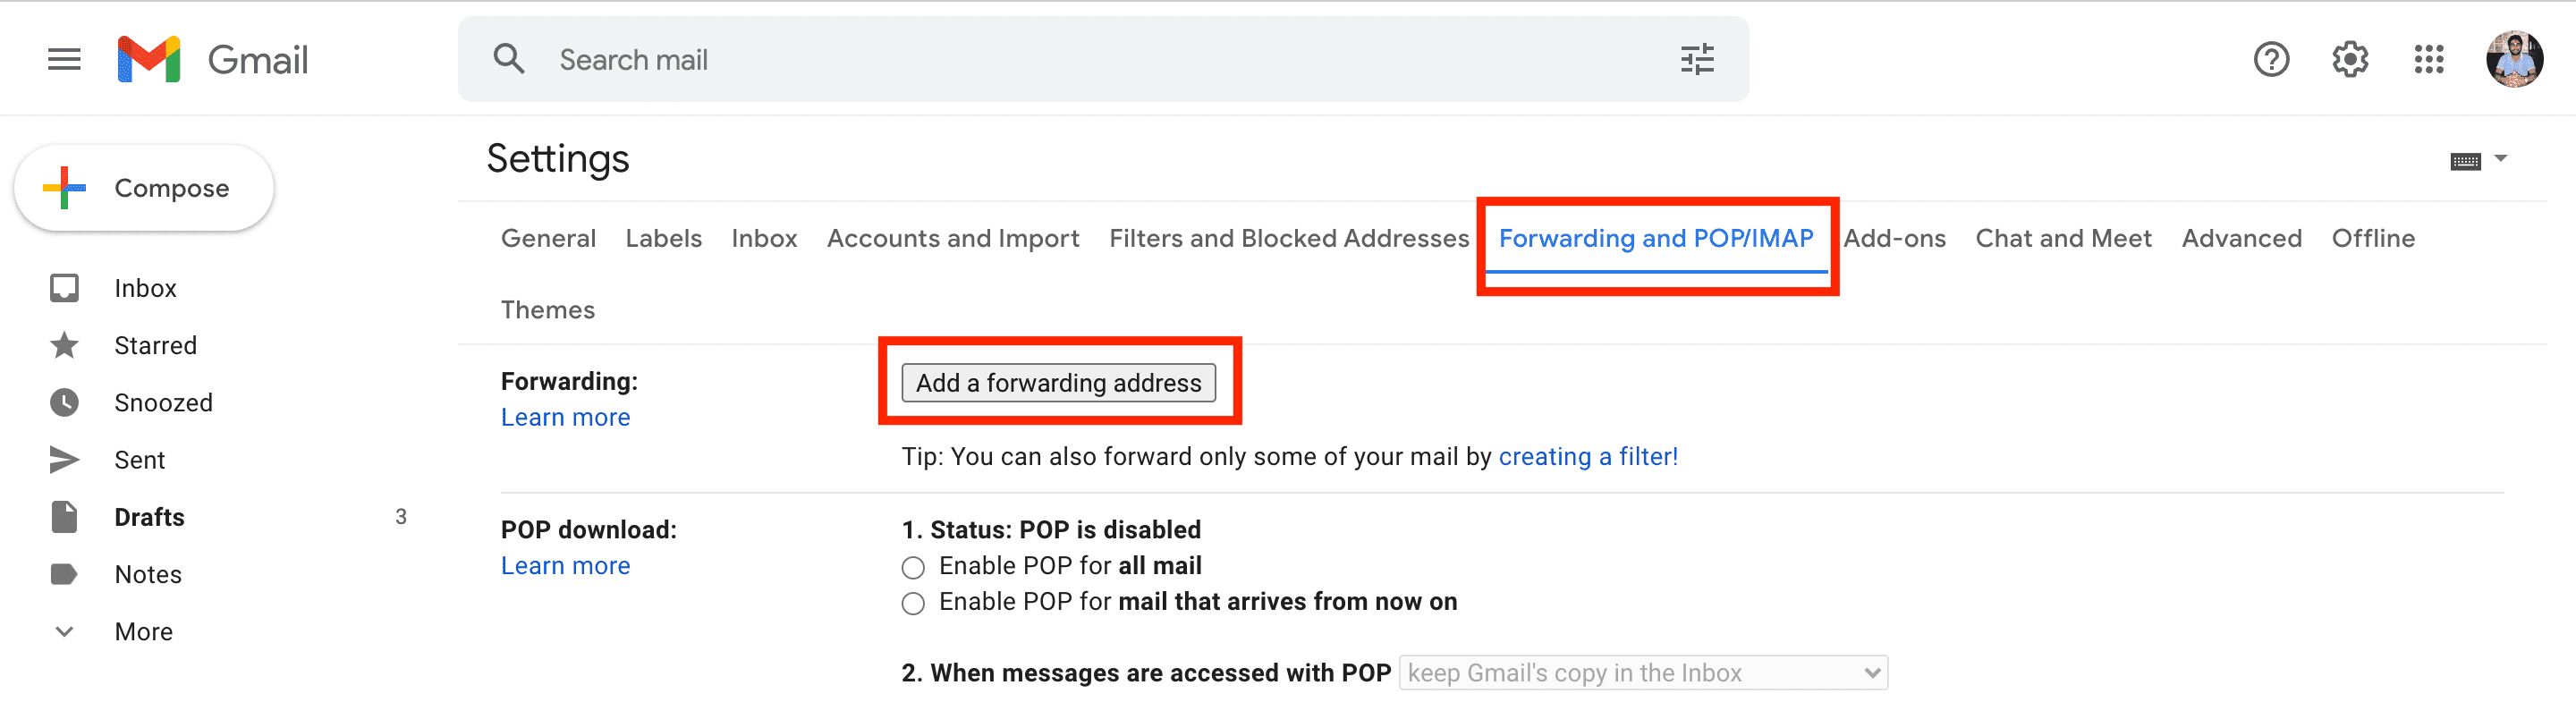 Add a forwarding address in Gmail